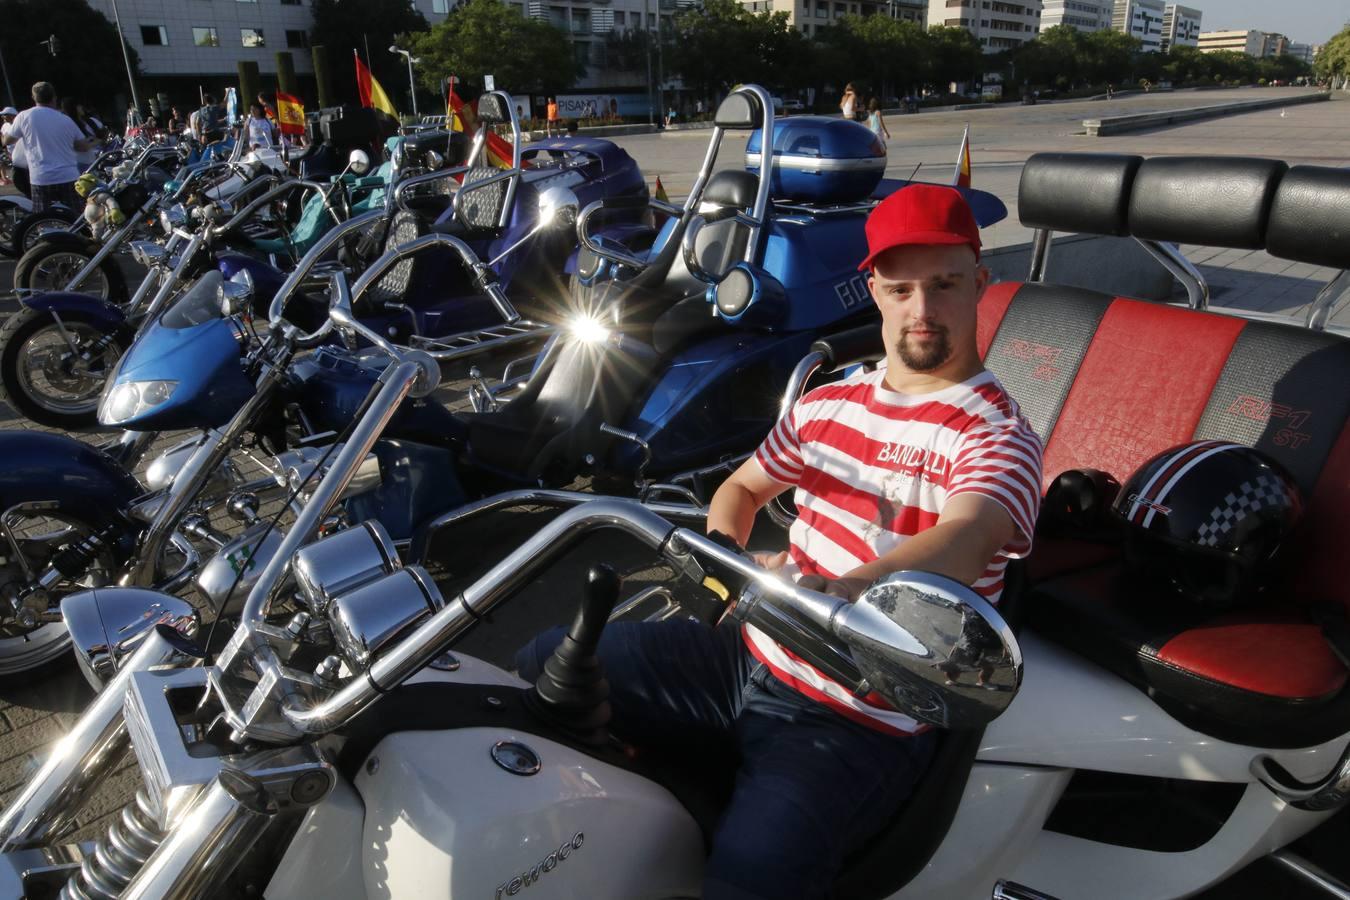 El paseo en moto de jóvenes con síndrome de Down, en imágenes